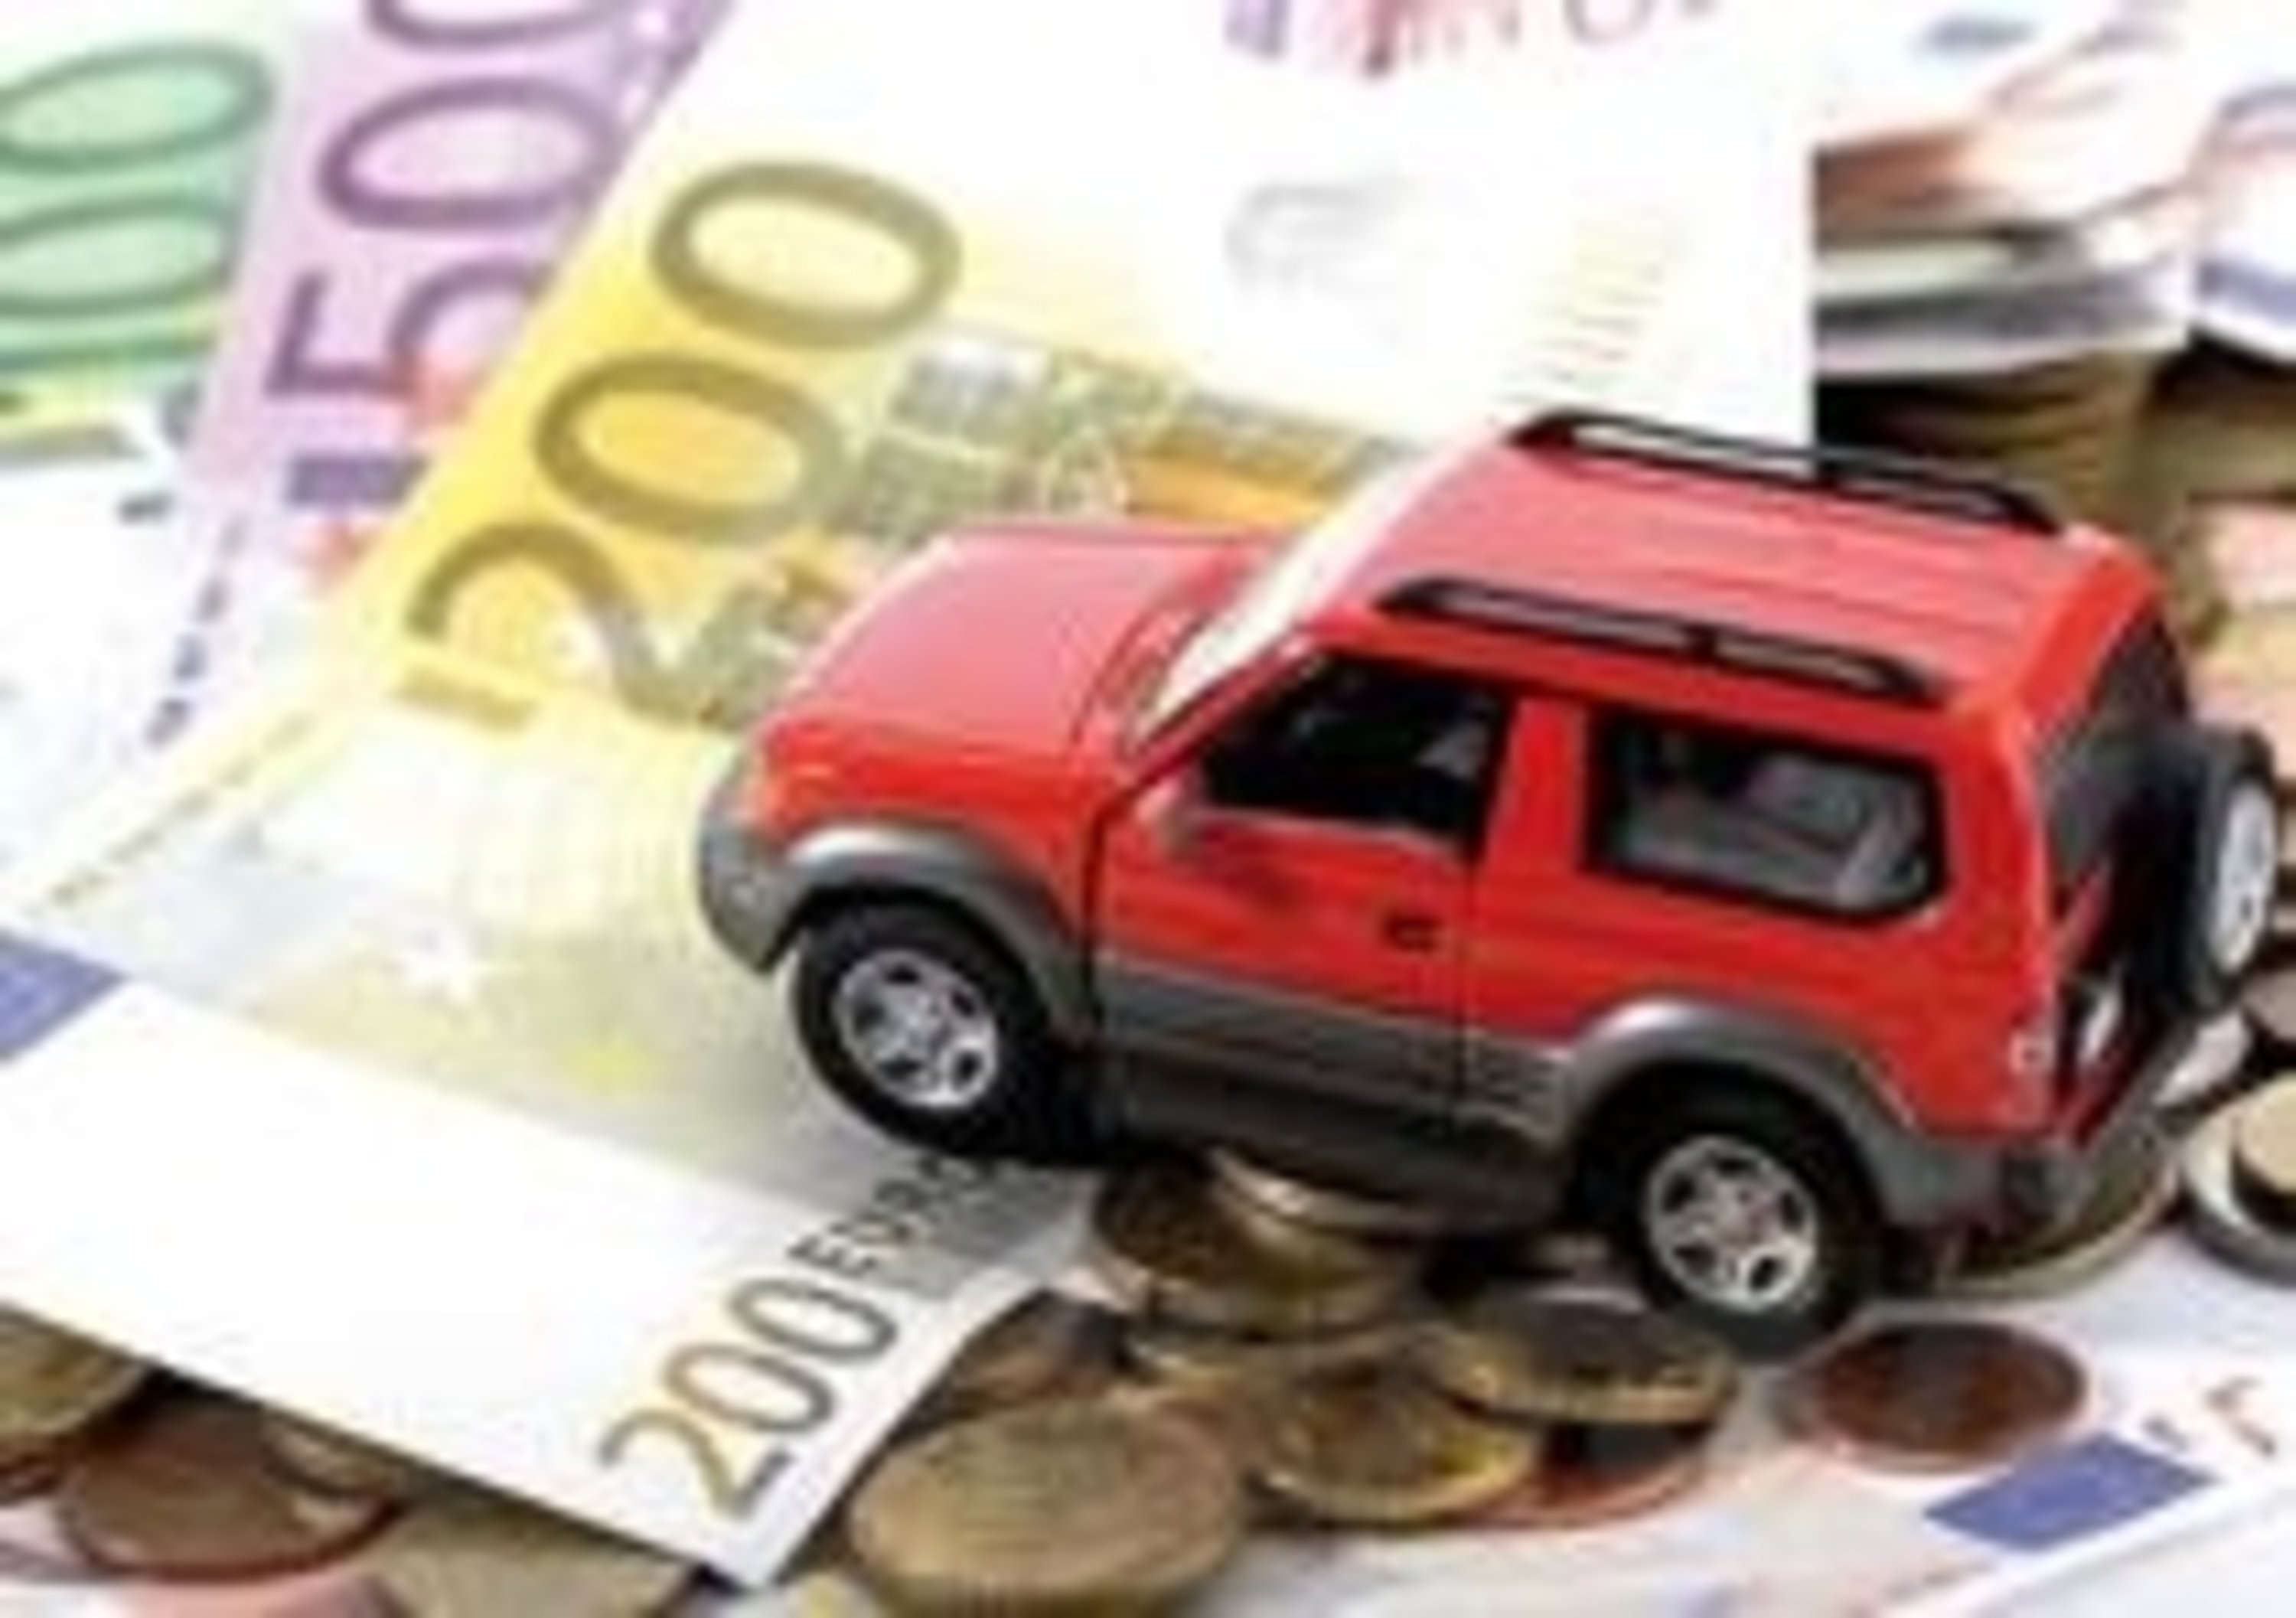 Nuovi bonus assicurazione auto, In arrivo: Ania conferma le facilitazioni (estensione e sconto?) da Covid-19 su polizza-2020